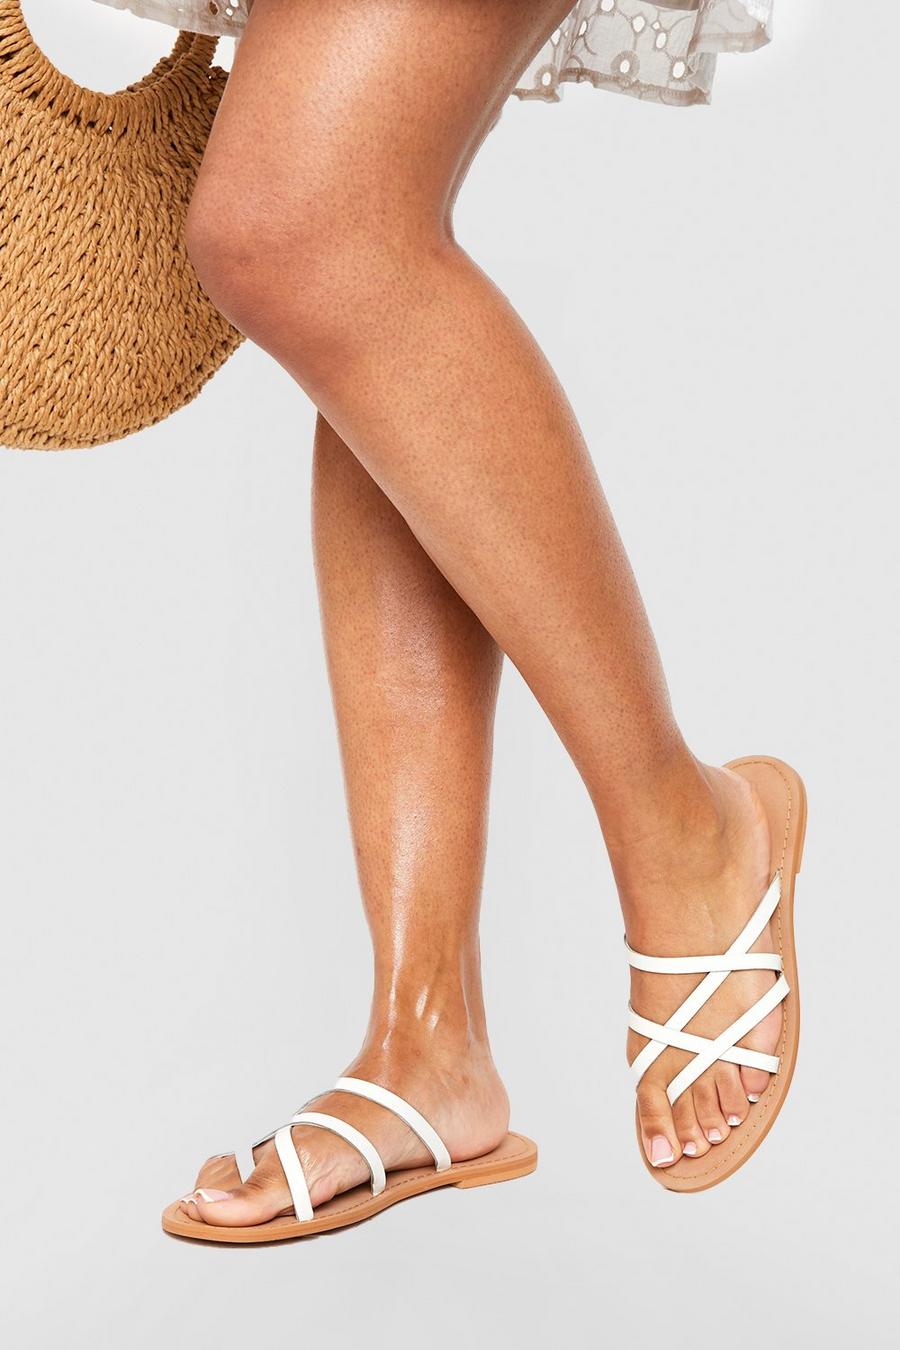 Sandali a calzata ampia in pelle con dettagli incrociati e laccetti, White